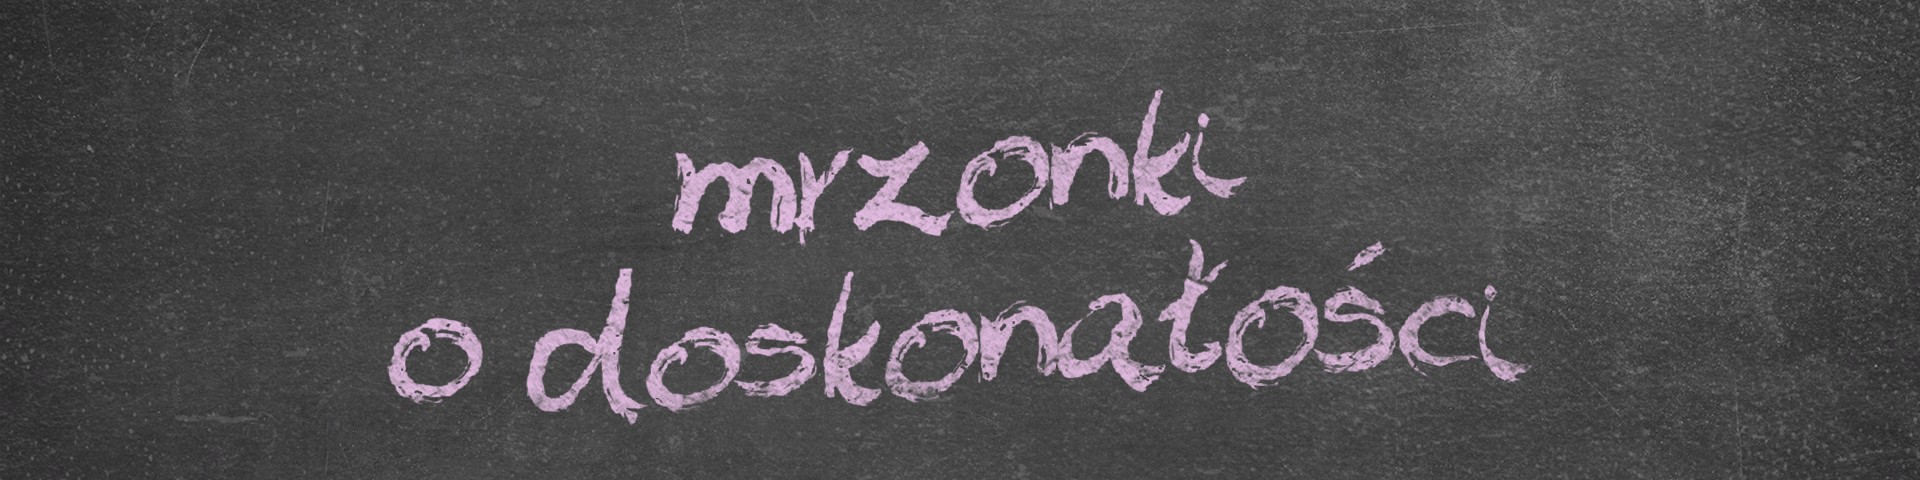 Horyzonty polskiej edukacji – mrzonki o doskonałości